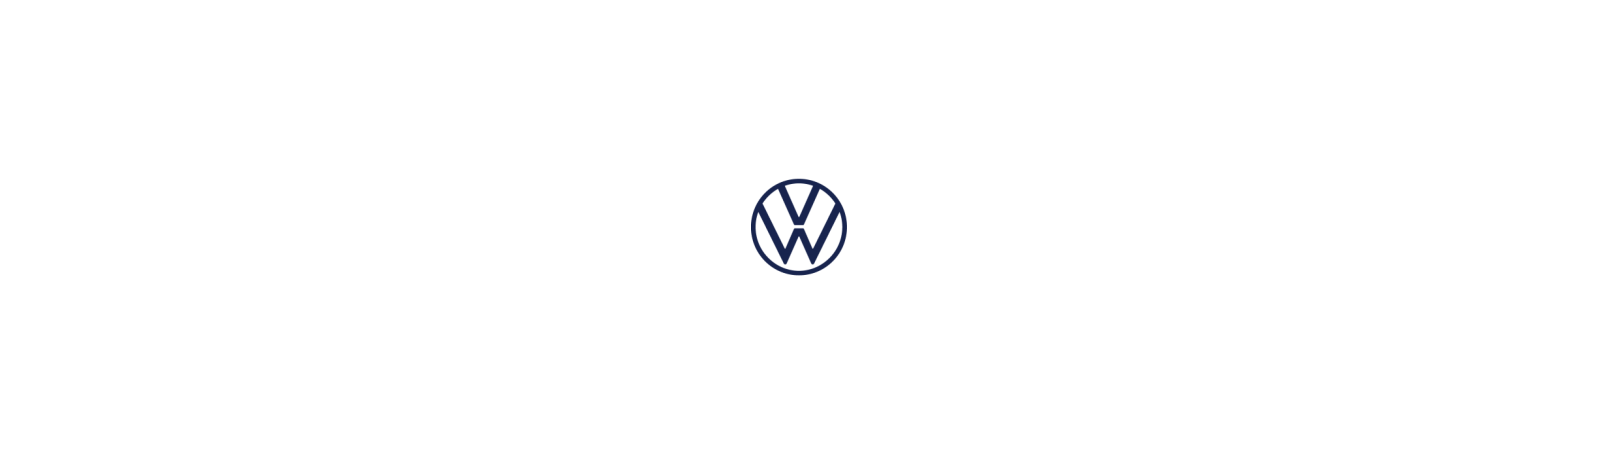 Volkswagen SCIROCCO